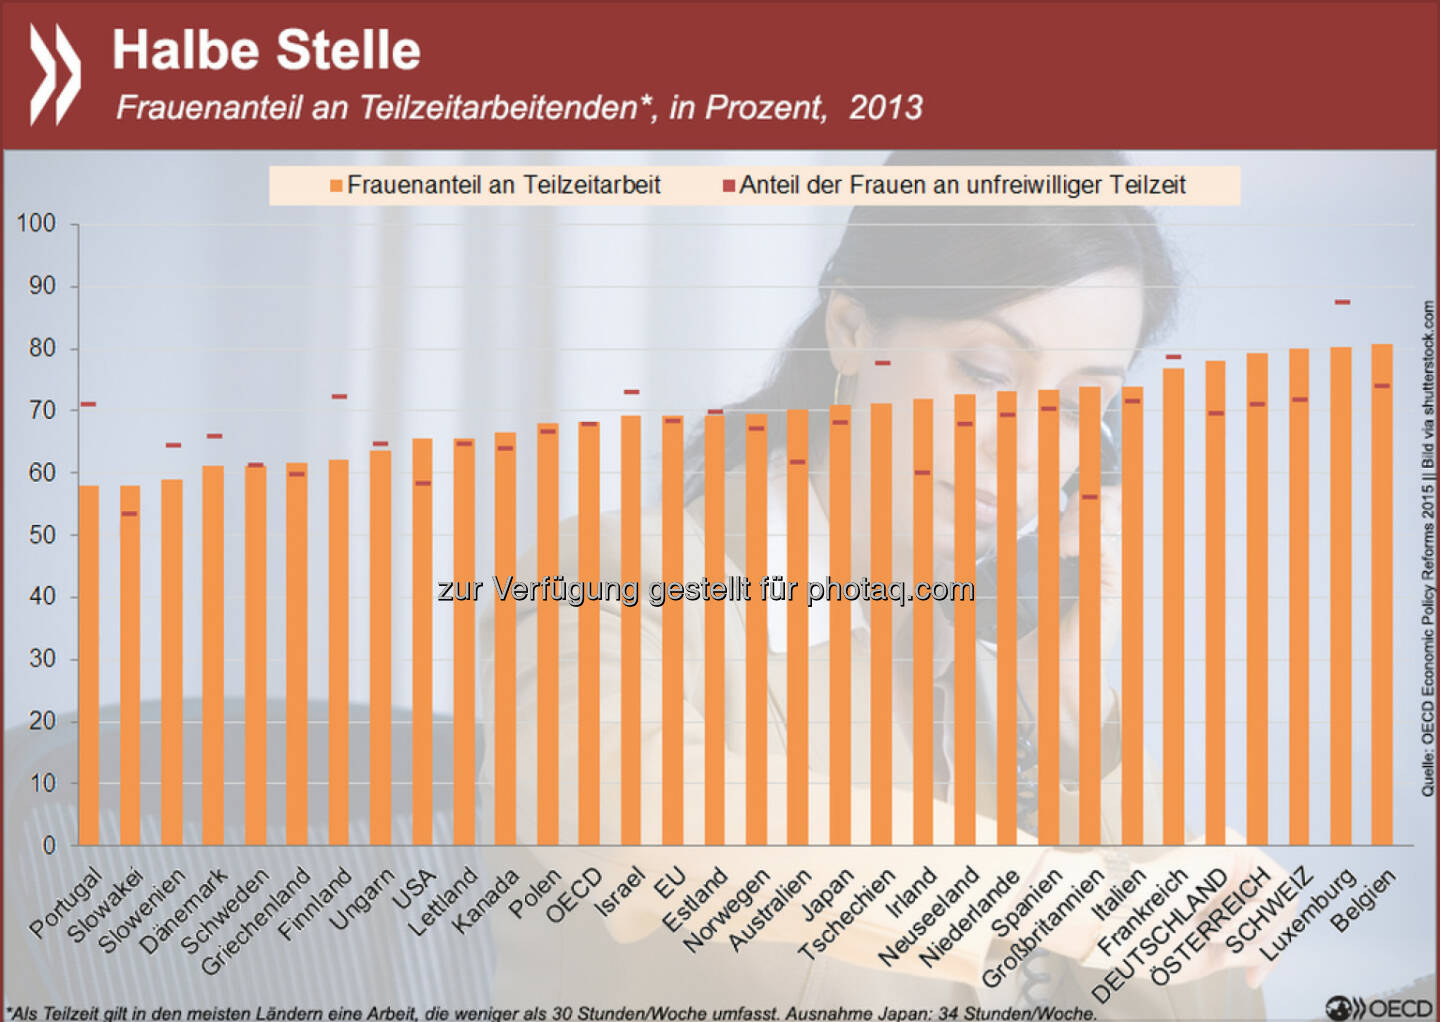 Voll im Job? Teilzeitarbeit ist in der OECD vorrangig weiblich. In Deutschland, Österreich und der Schweiz sind sogar fast 80 Prozent aller Teilzeitkräfte Frauen. Auch unter den Erwerbstätigen, die unfreiwillig verkürzt arbeiten, sind die Mehrzahl Frauen.
Mehr Informationen zur Beteiligung von Frauen am Arbeitsmarkt findet Ihr unter: http://bit.ly/1F1Jbr6 (S.36ff.)